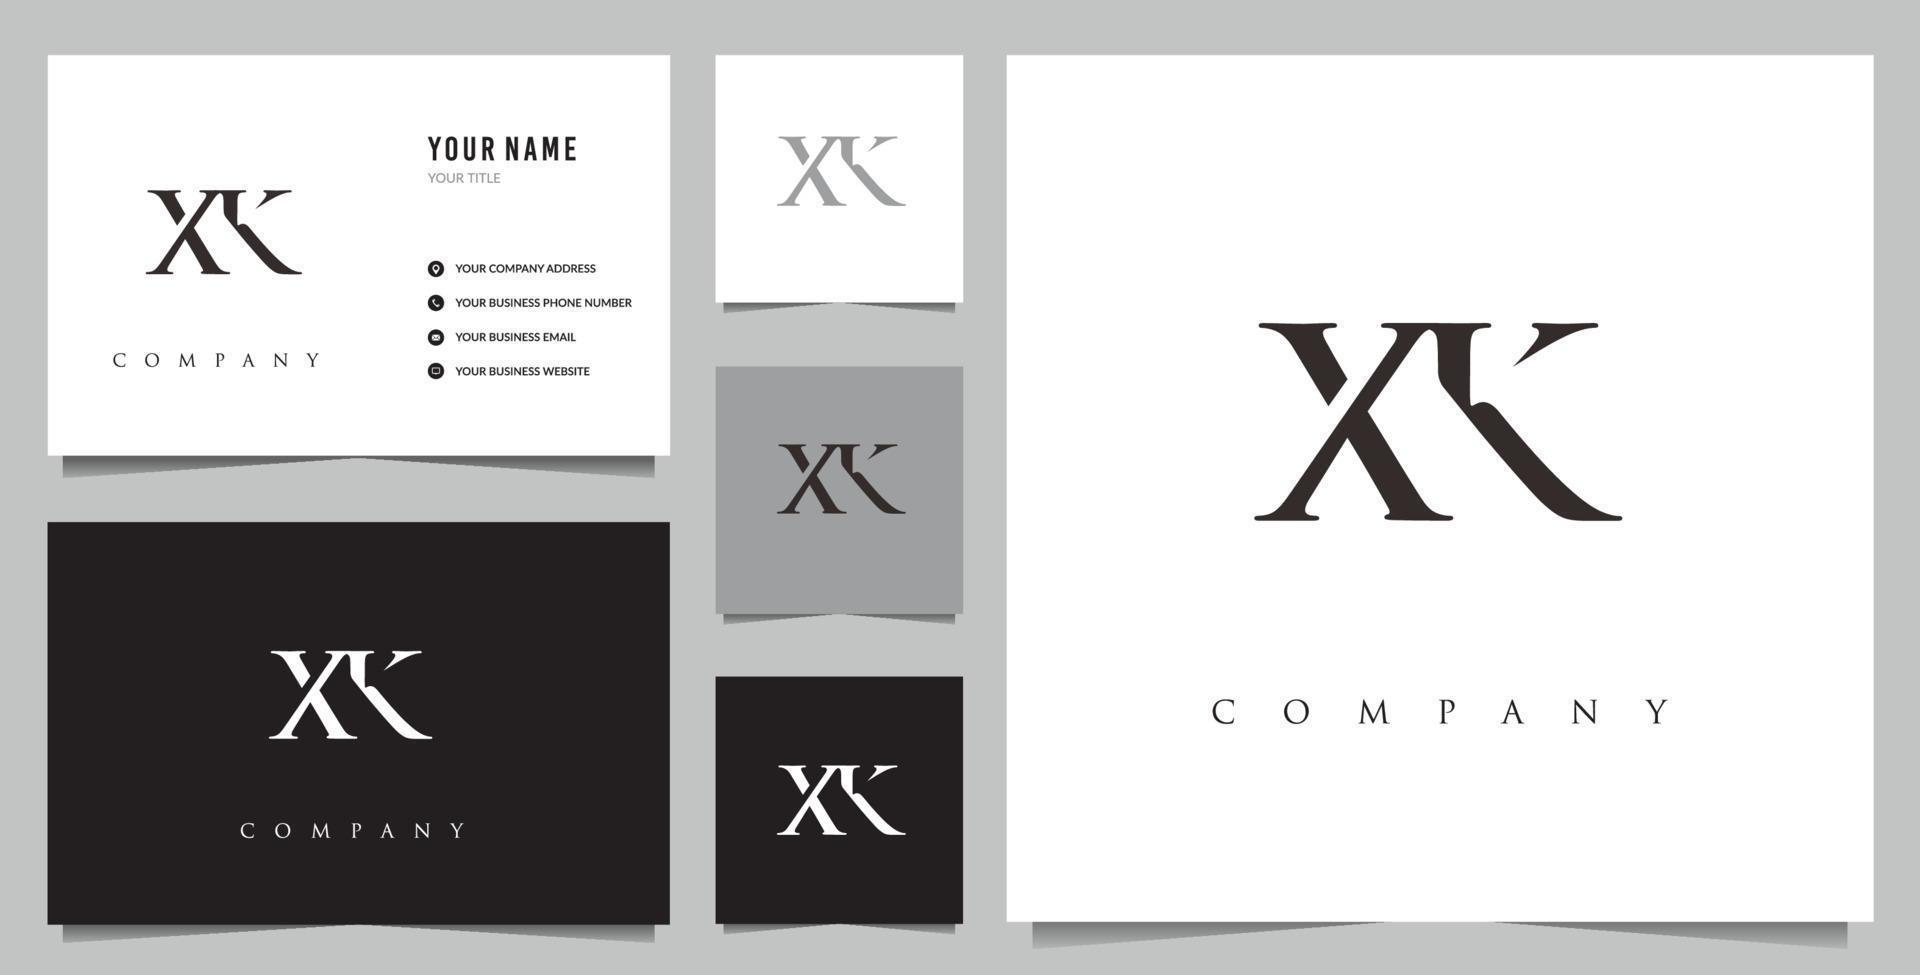 logo xk initial et carte de visite vecteur